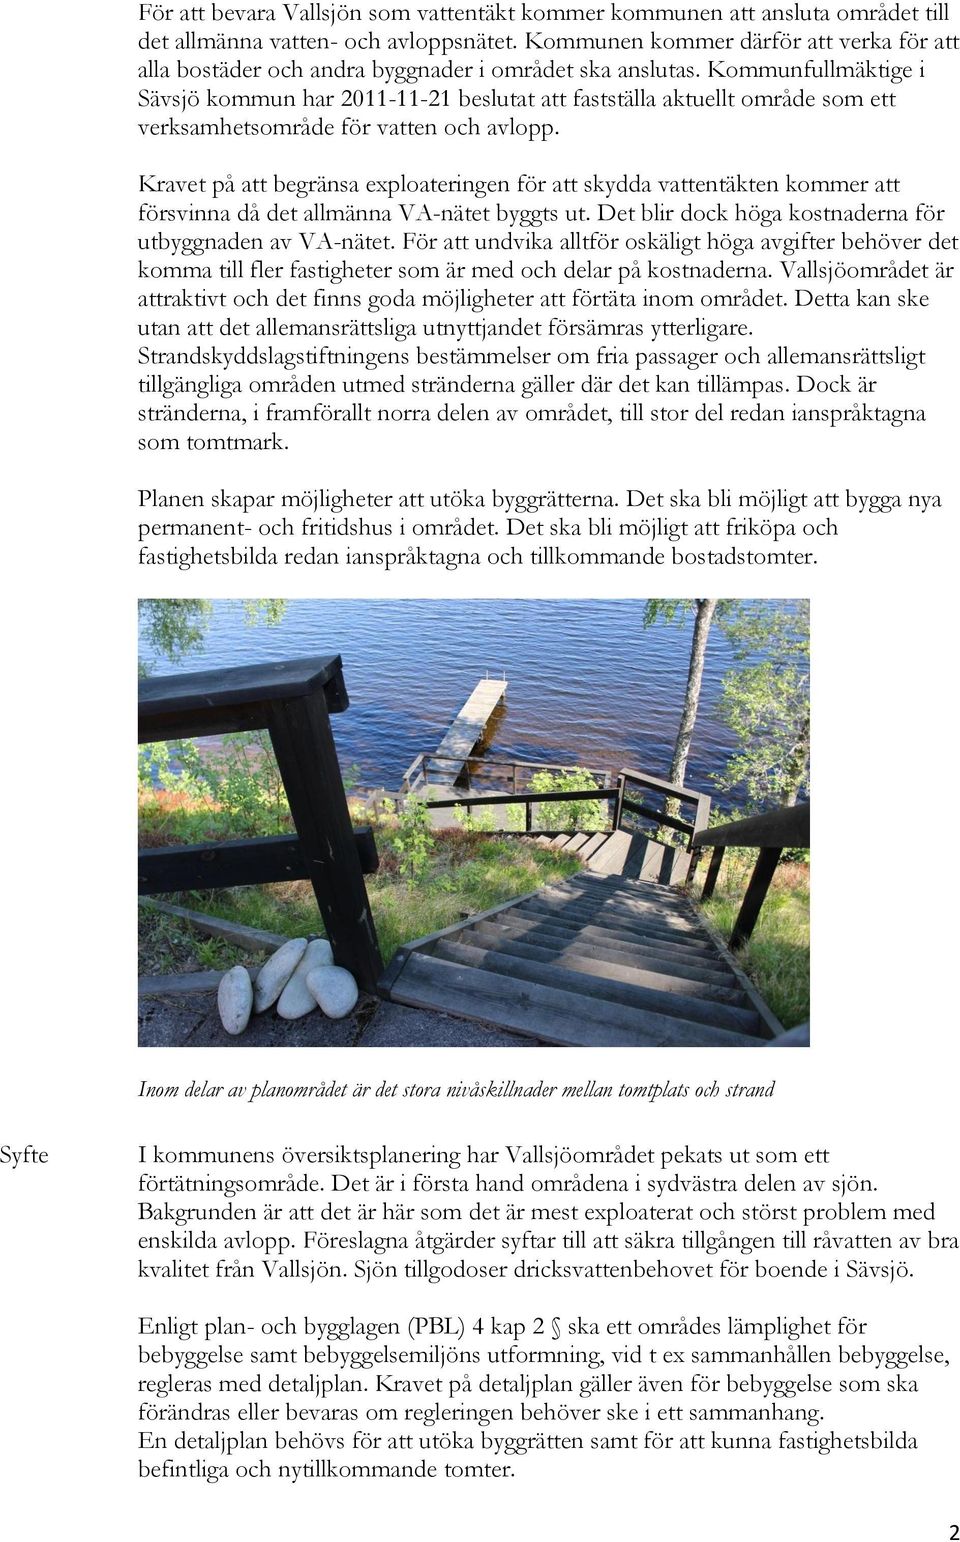 Kommunfullmäktige i Sävsjö kommun har 2011-11-21 beslutat att fastställa aktuellt område som ett verksamhetsområde för vatten och avlopp.